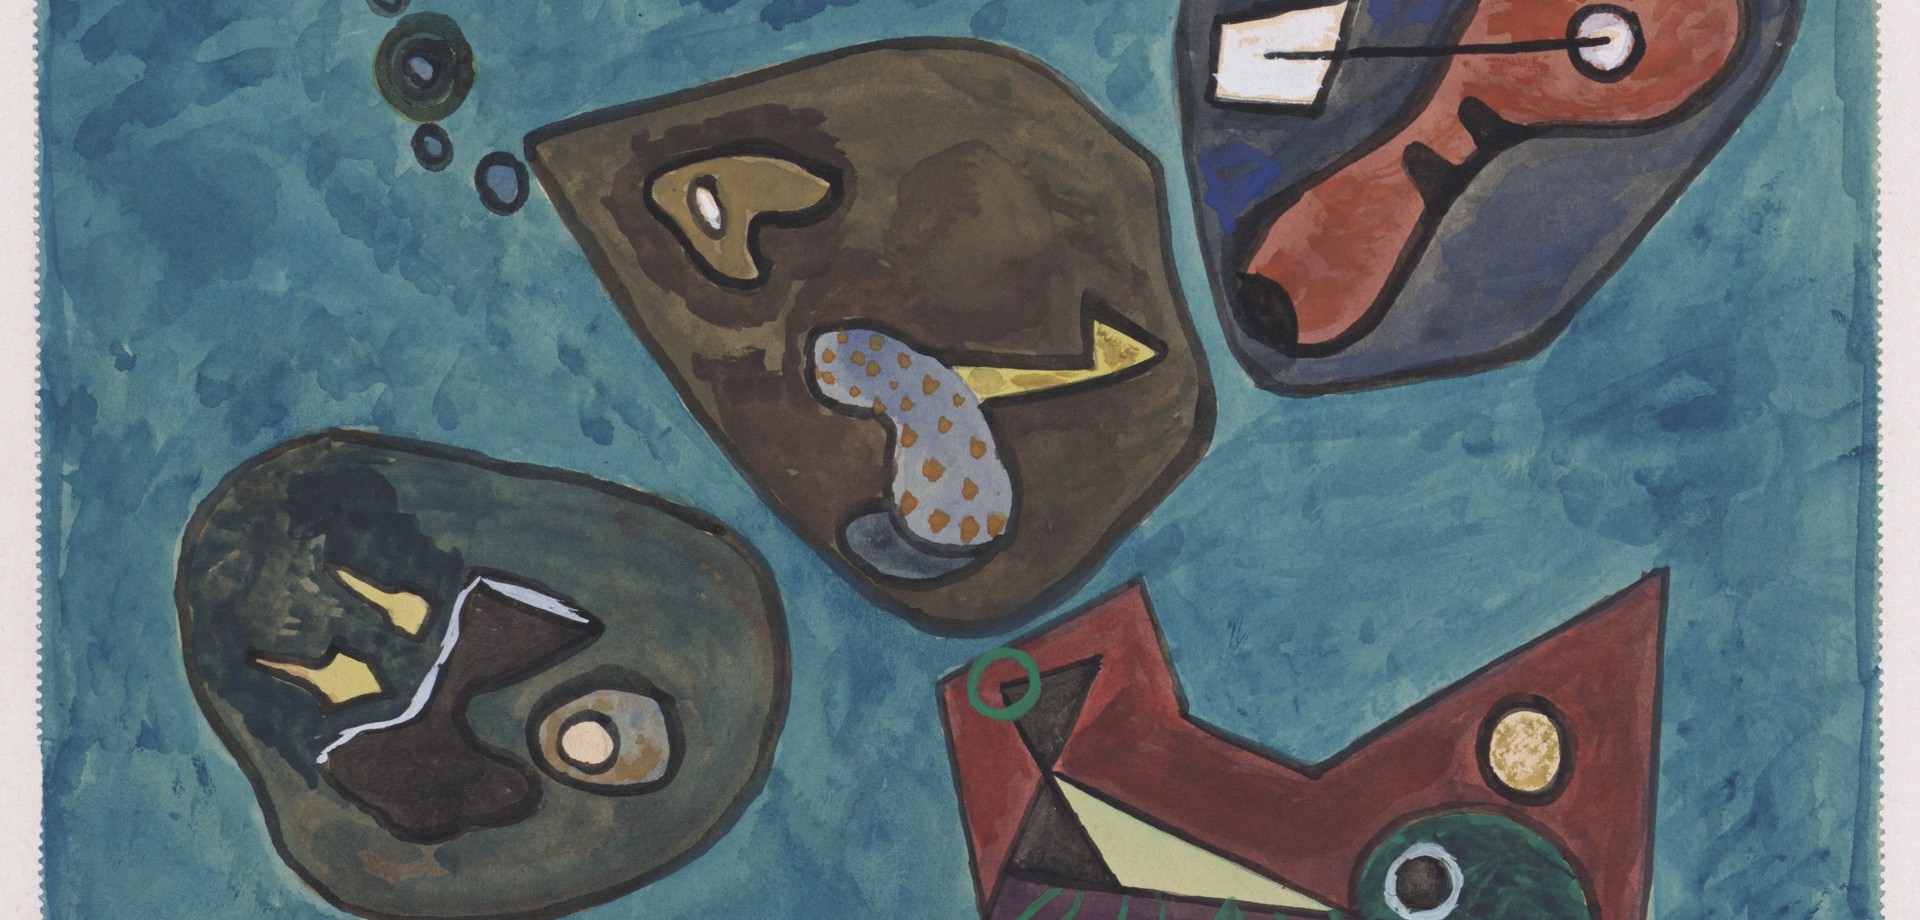 Bild von Ernst Meister ohne Titel aus dem Jahr 1955. Vier abstrakte Formkompositionen schwimmen auf einem blauen Hintergrund.